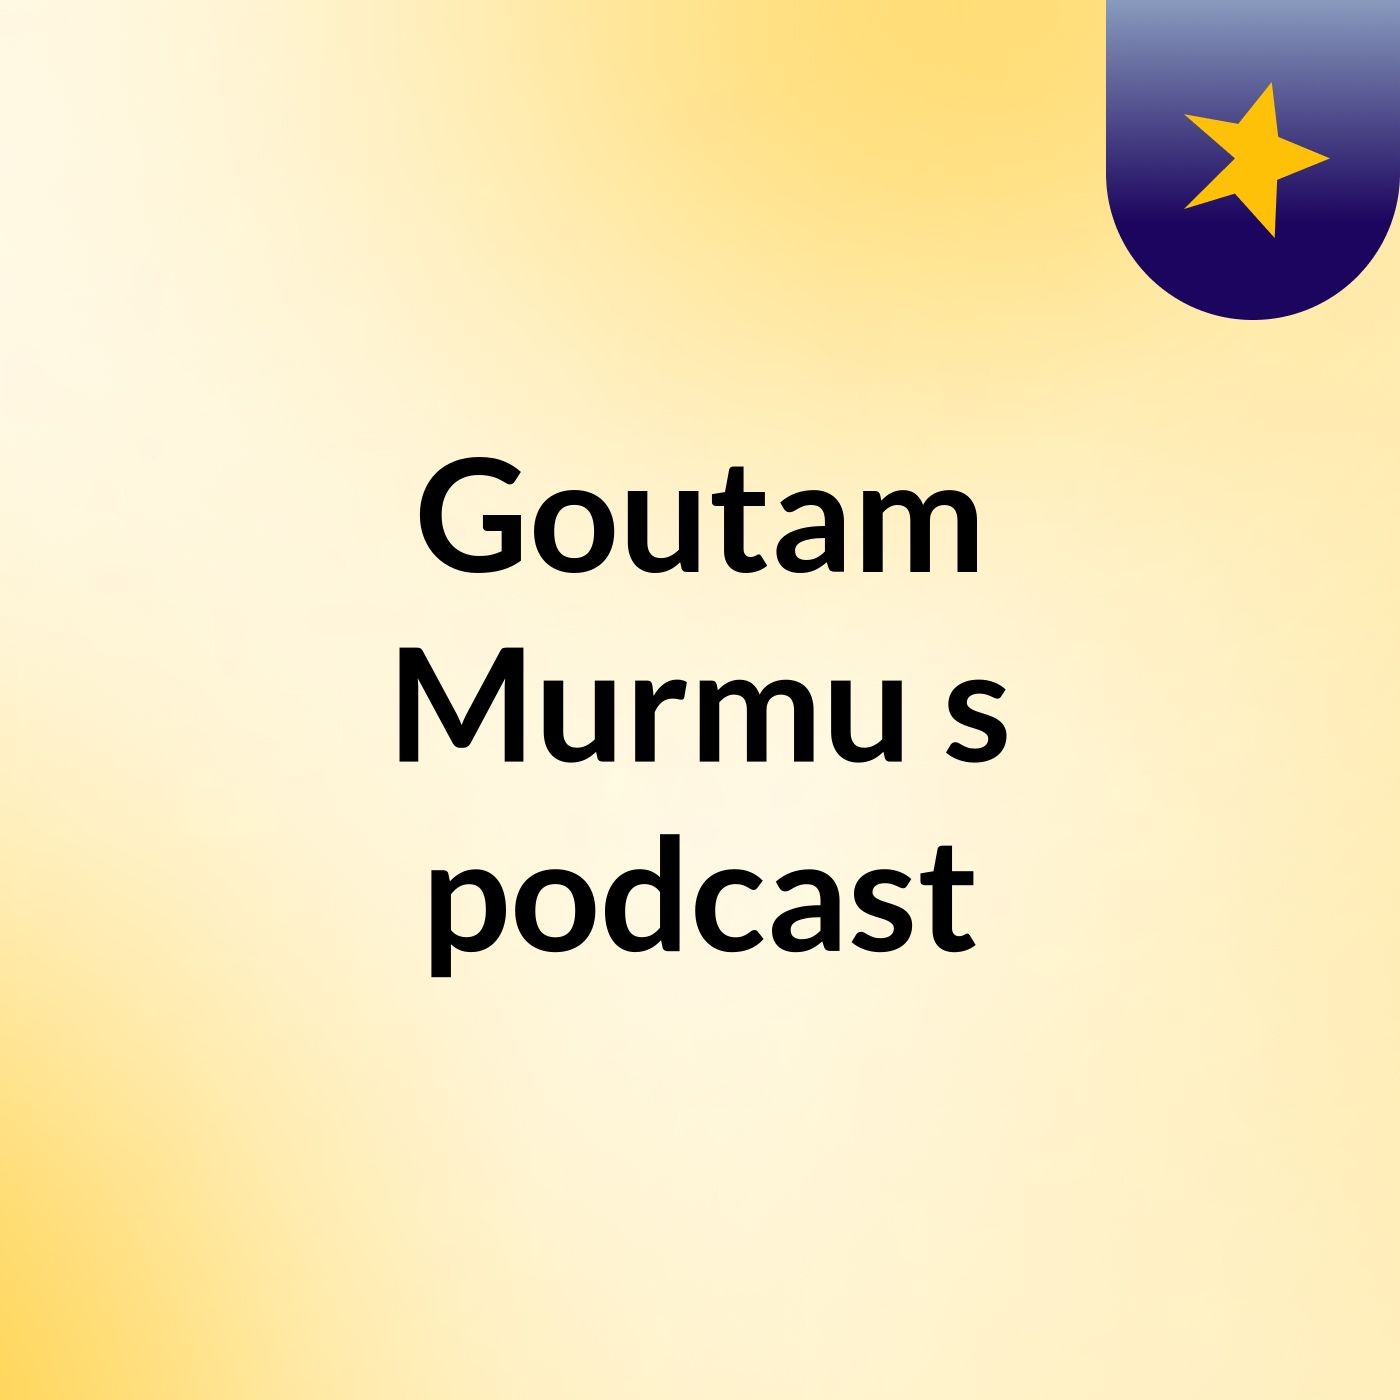 Goutam Murmu's podcast